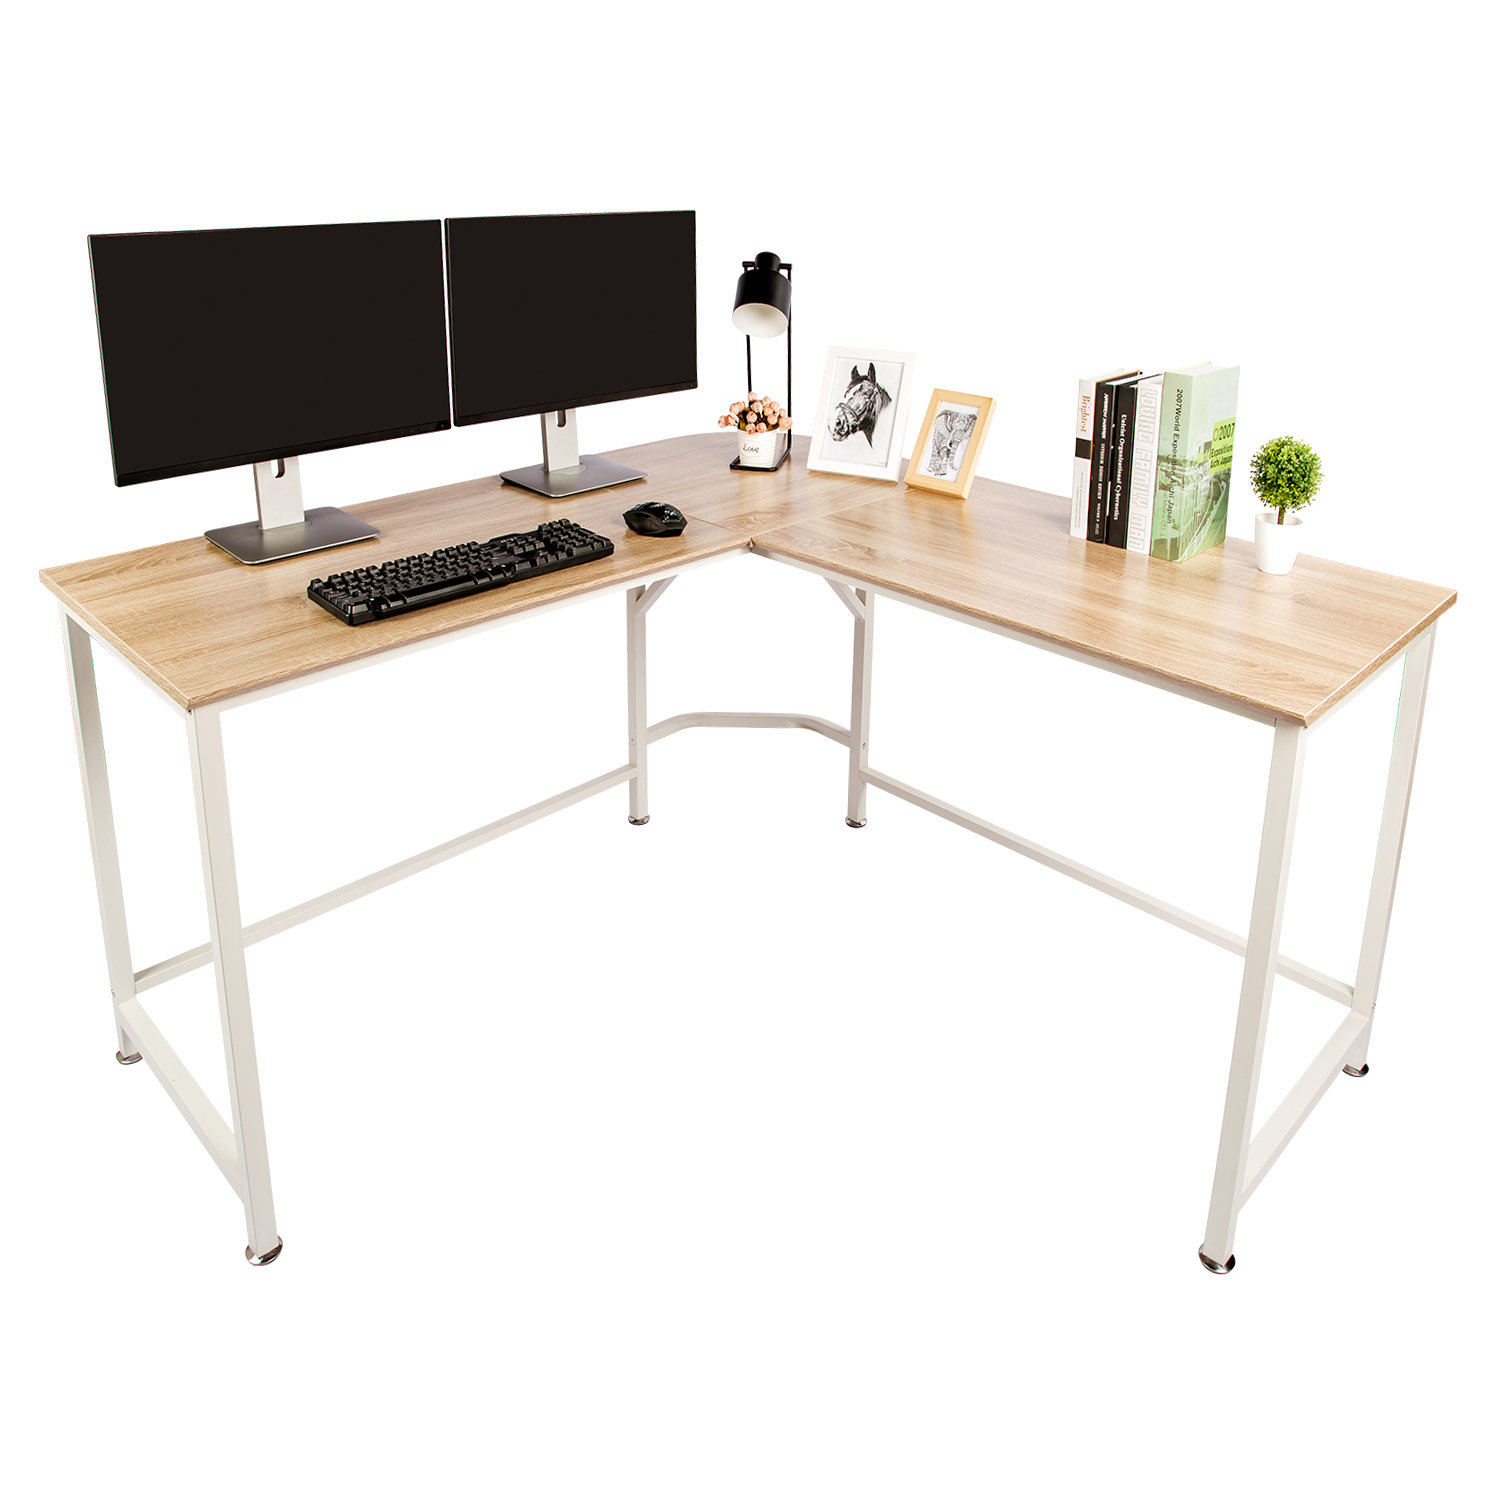 WALNUT TOPSKY Computer Desk 140x140cm with 60cm Deep L-Shaped Desk Corner Workstation Bevel Edge Design 